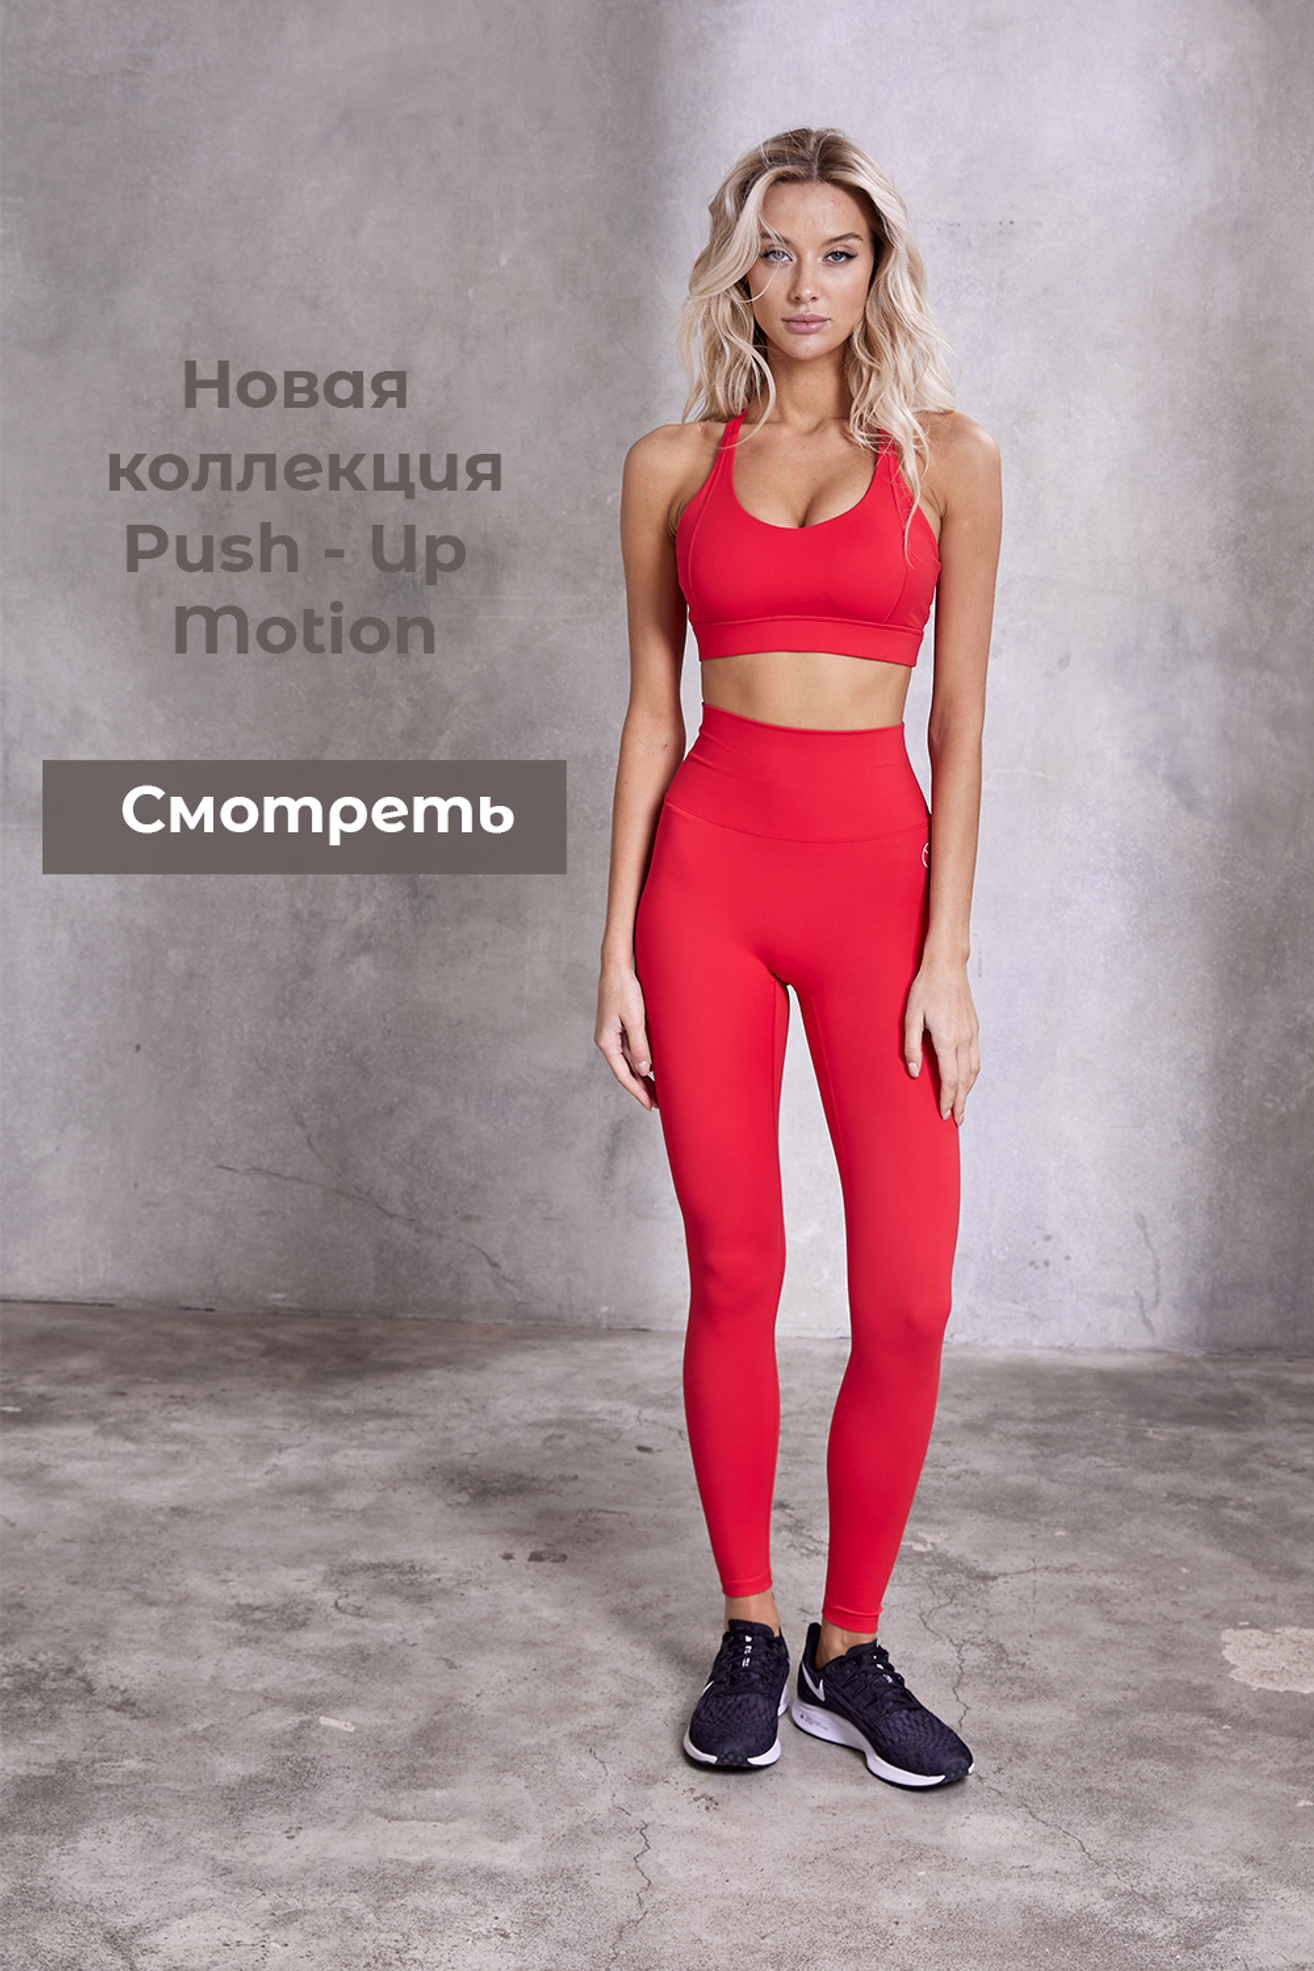 BELLATICA - официальный интернет-магазин спортивной женской одежды